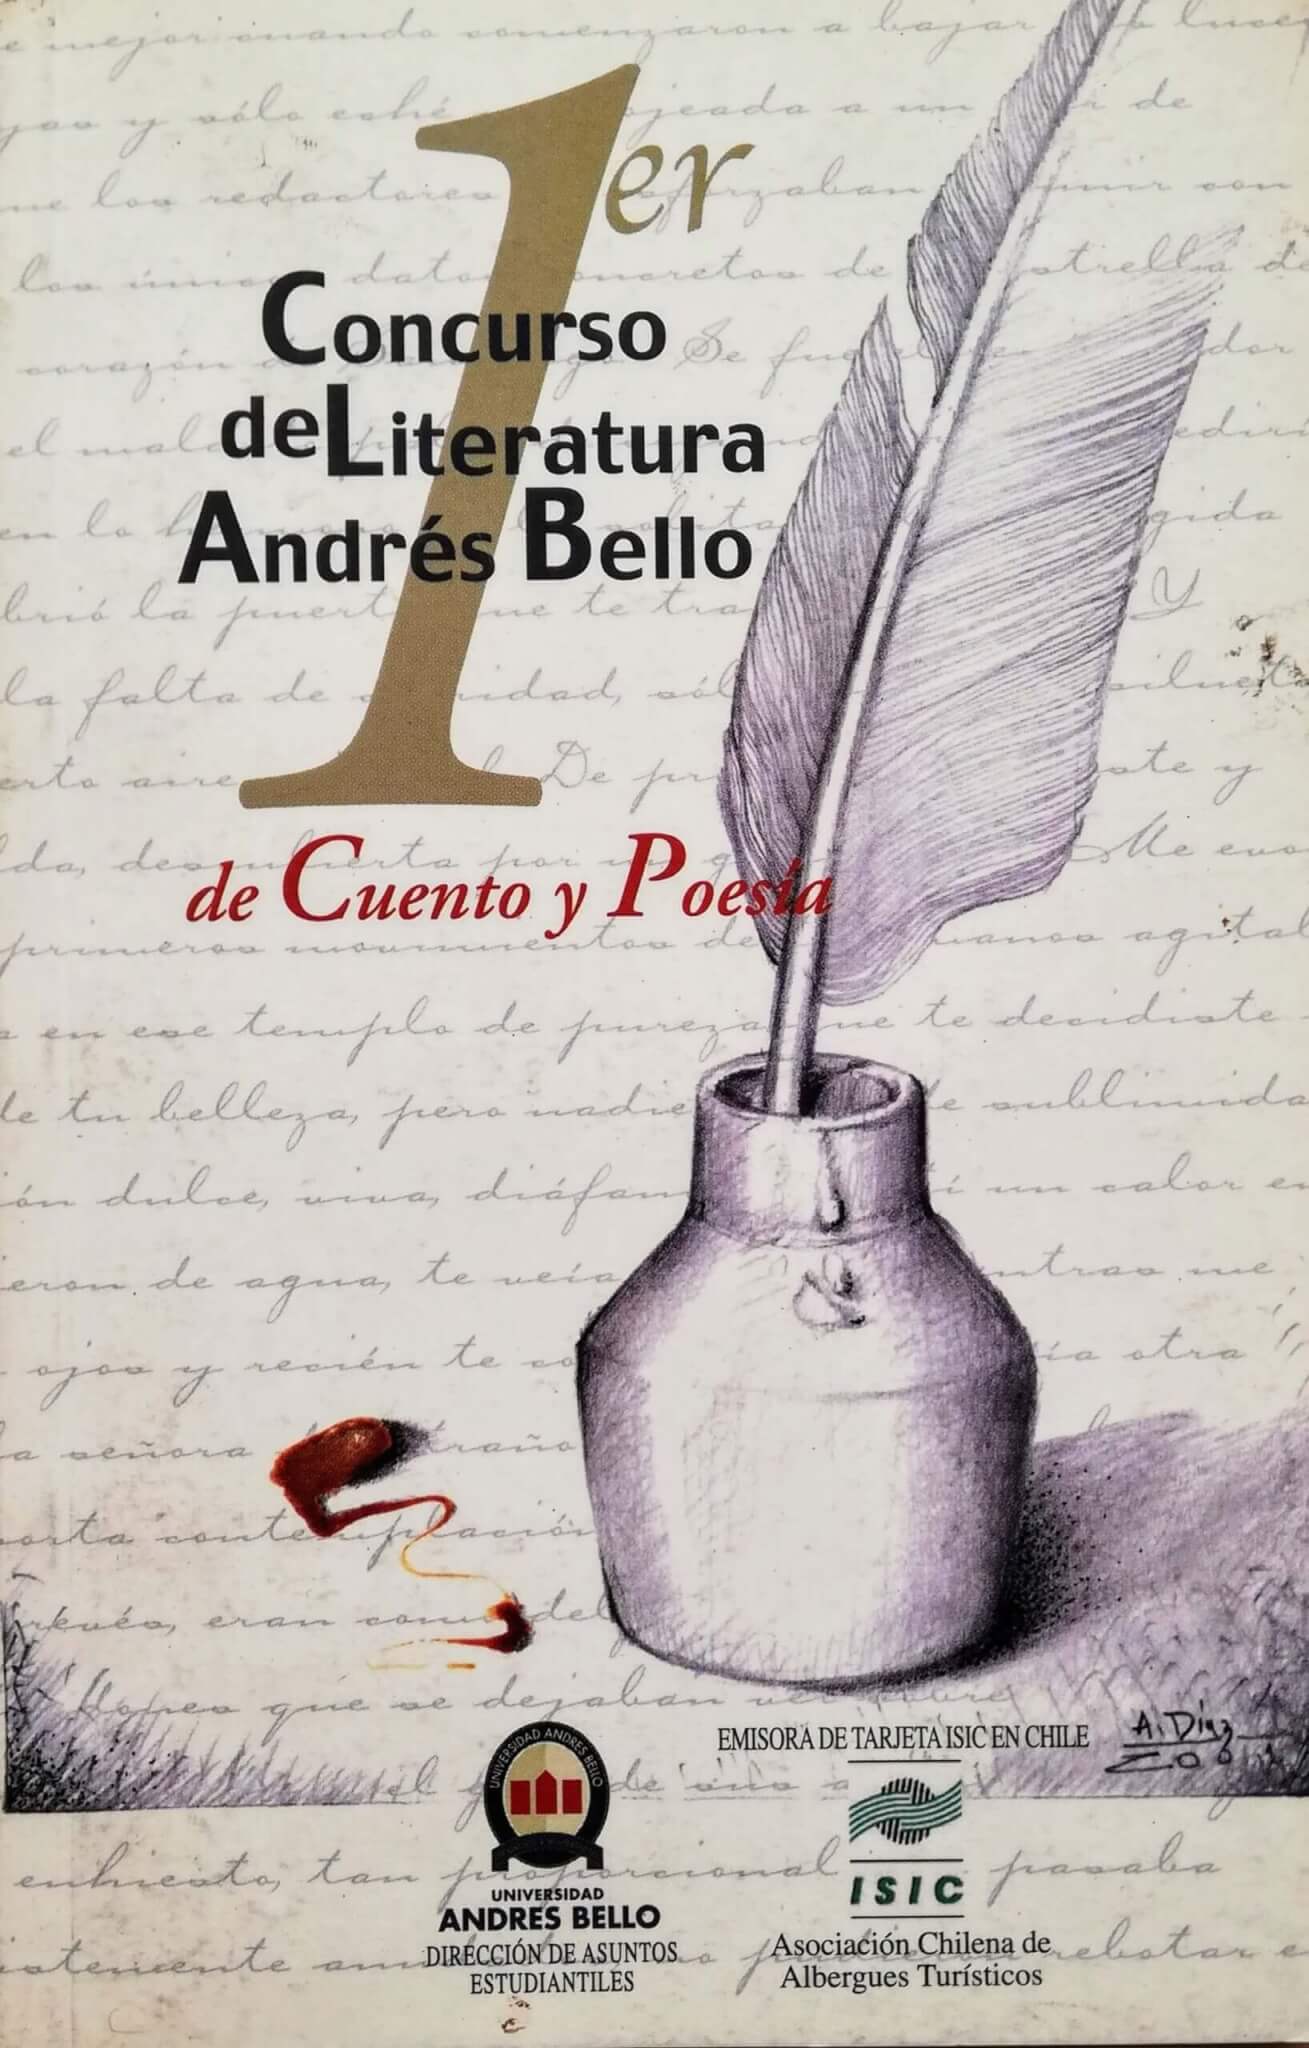 1er concurso de literatura andrés bello de cuento y poesía, varios autores